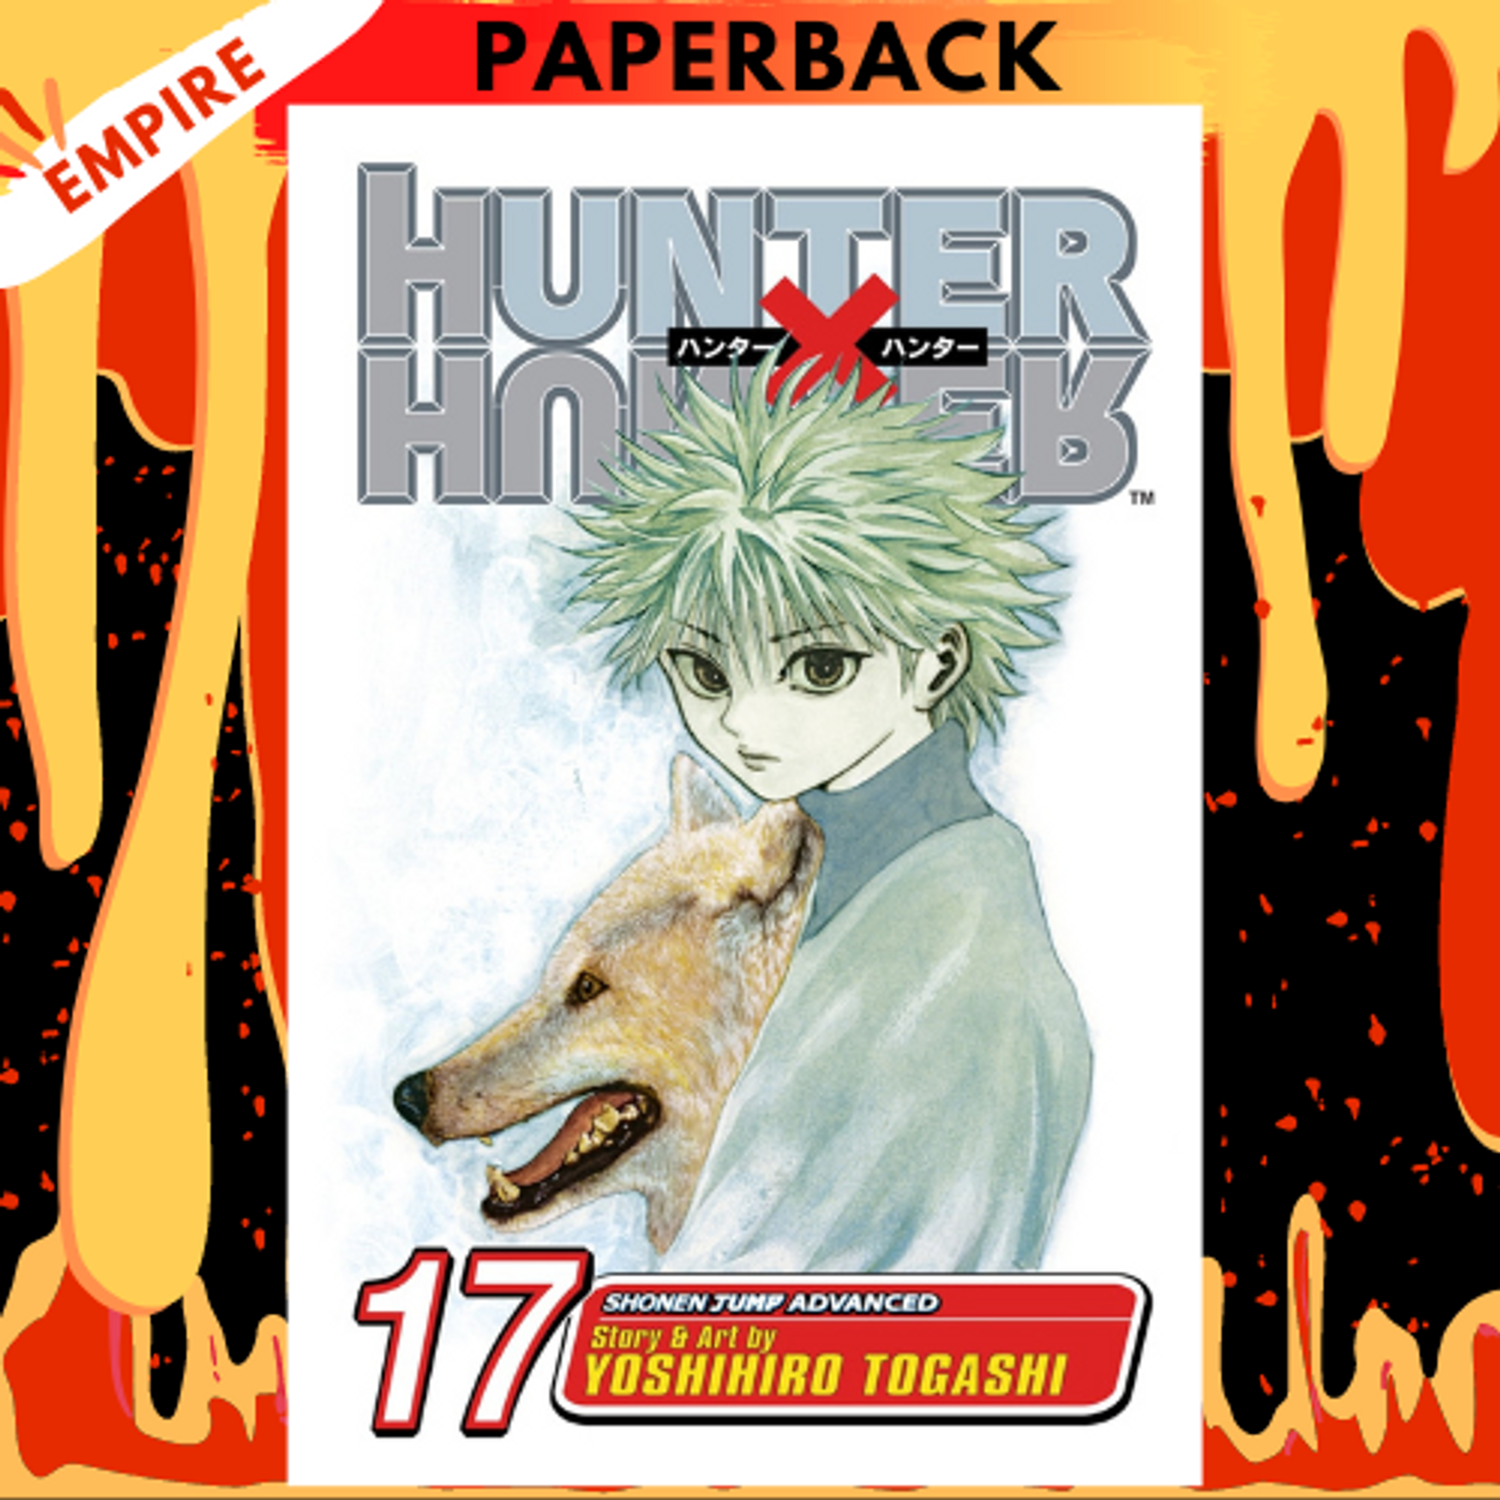 Hunter x Hunter, Vol. 3: Togashi, Yoshihiro, Togashi, Yoshihiro